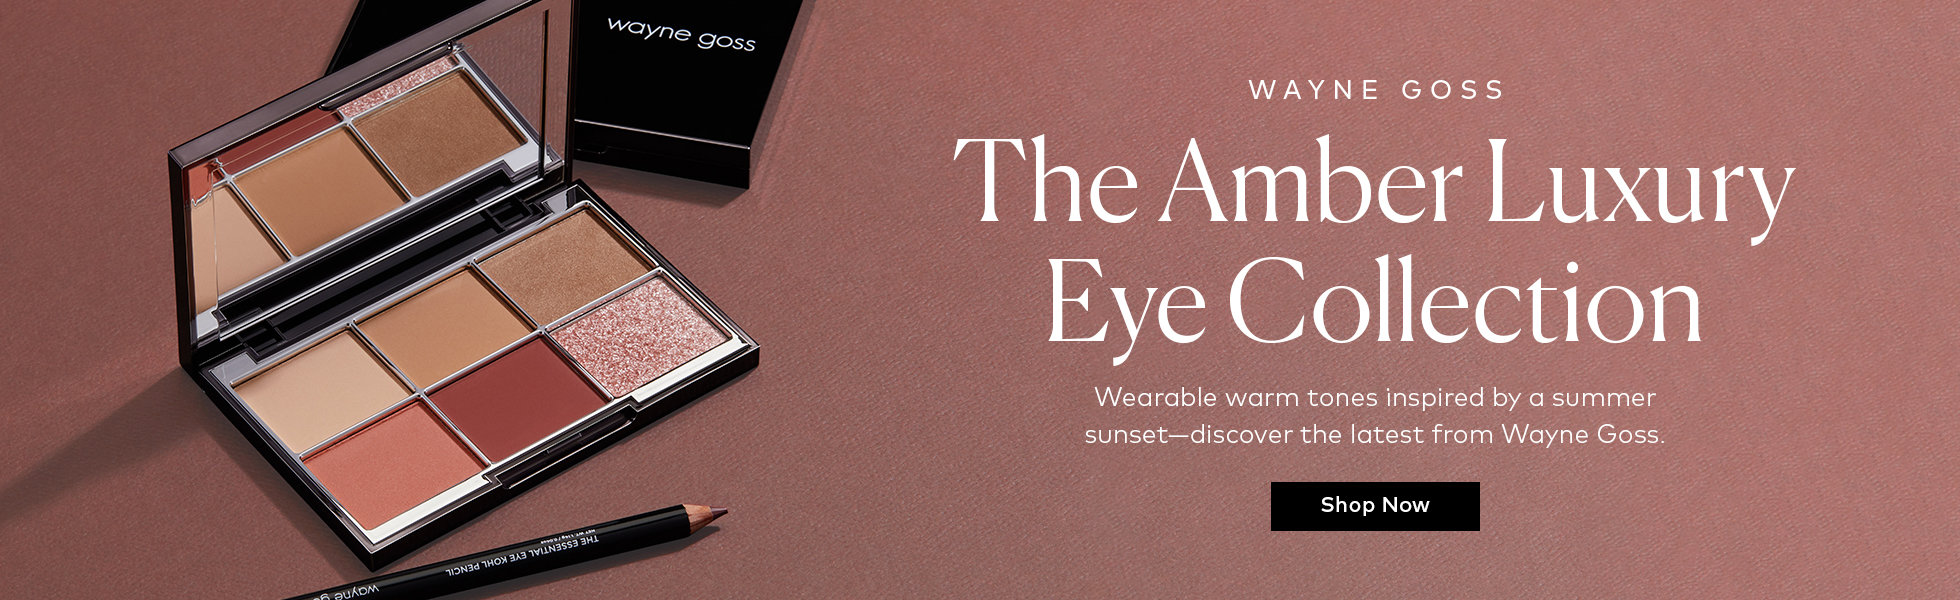 Wayne Goss Amber Luxury Eye Collection